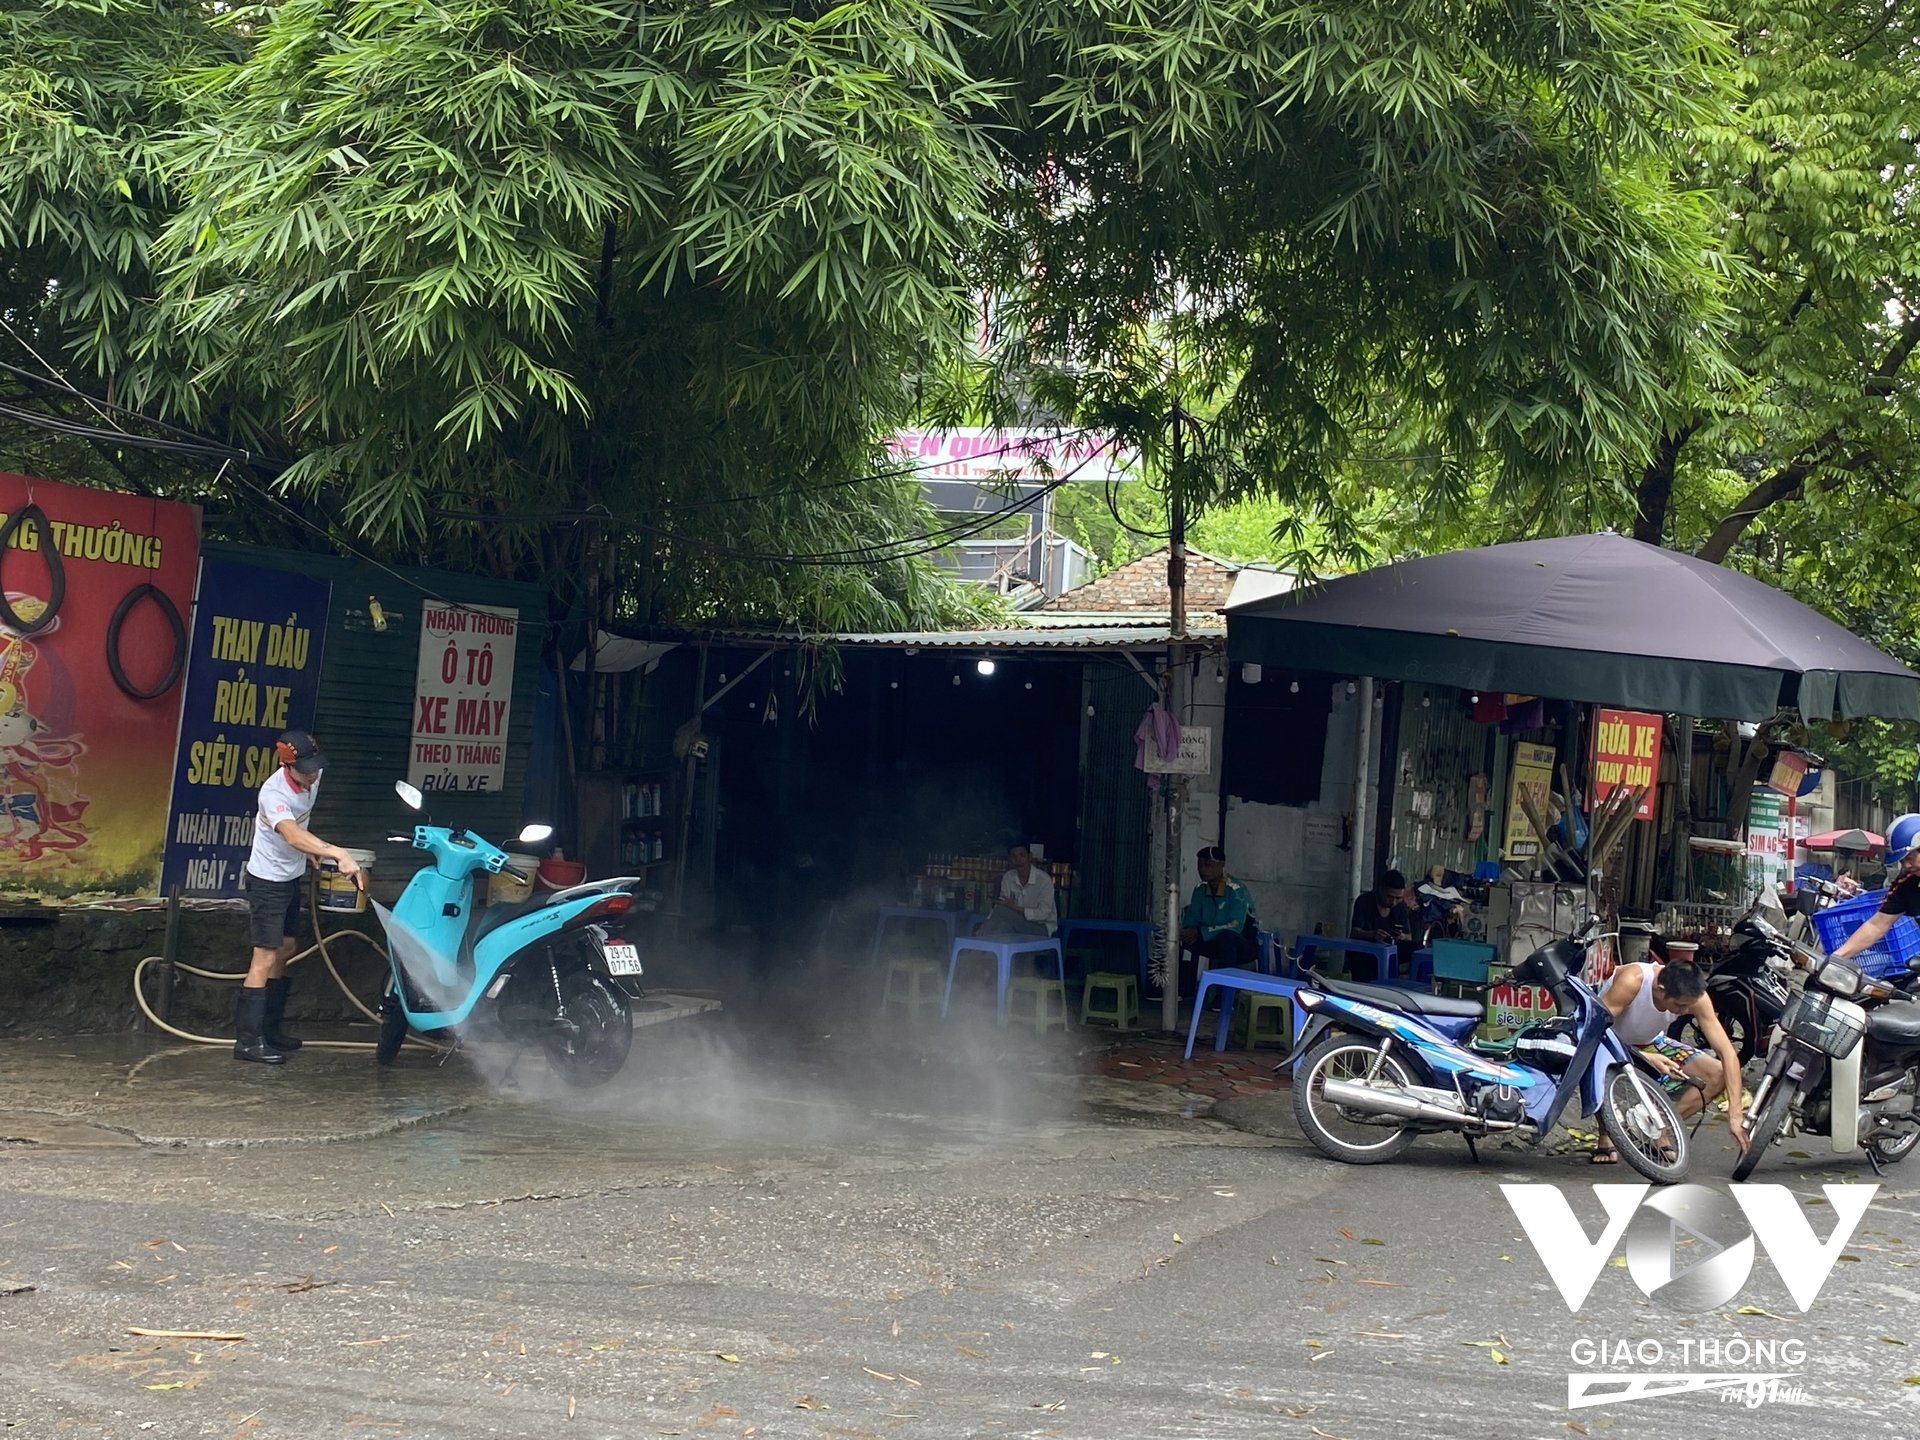 Bụi bẩn, nước từ các vòi cao áp bắn tung tóe khiến người đi đường luôn phải tránh xa khi đi qua những khu vực có cửa hàng rửa xe.